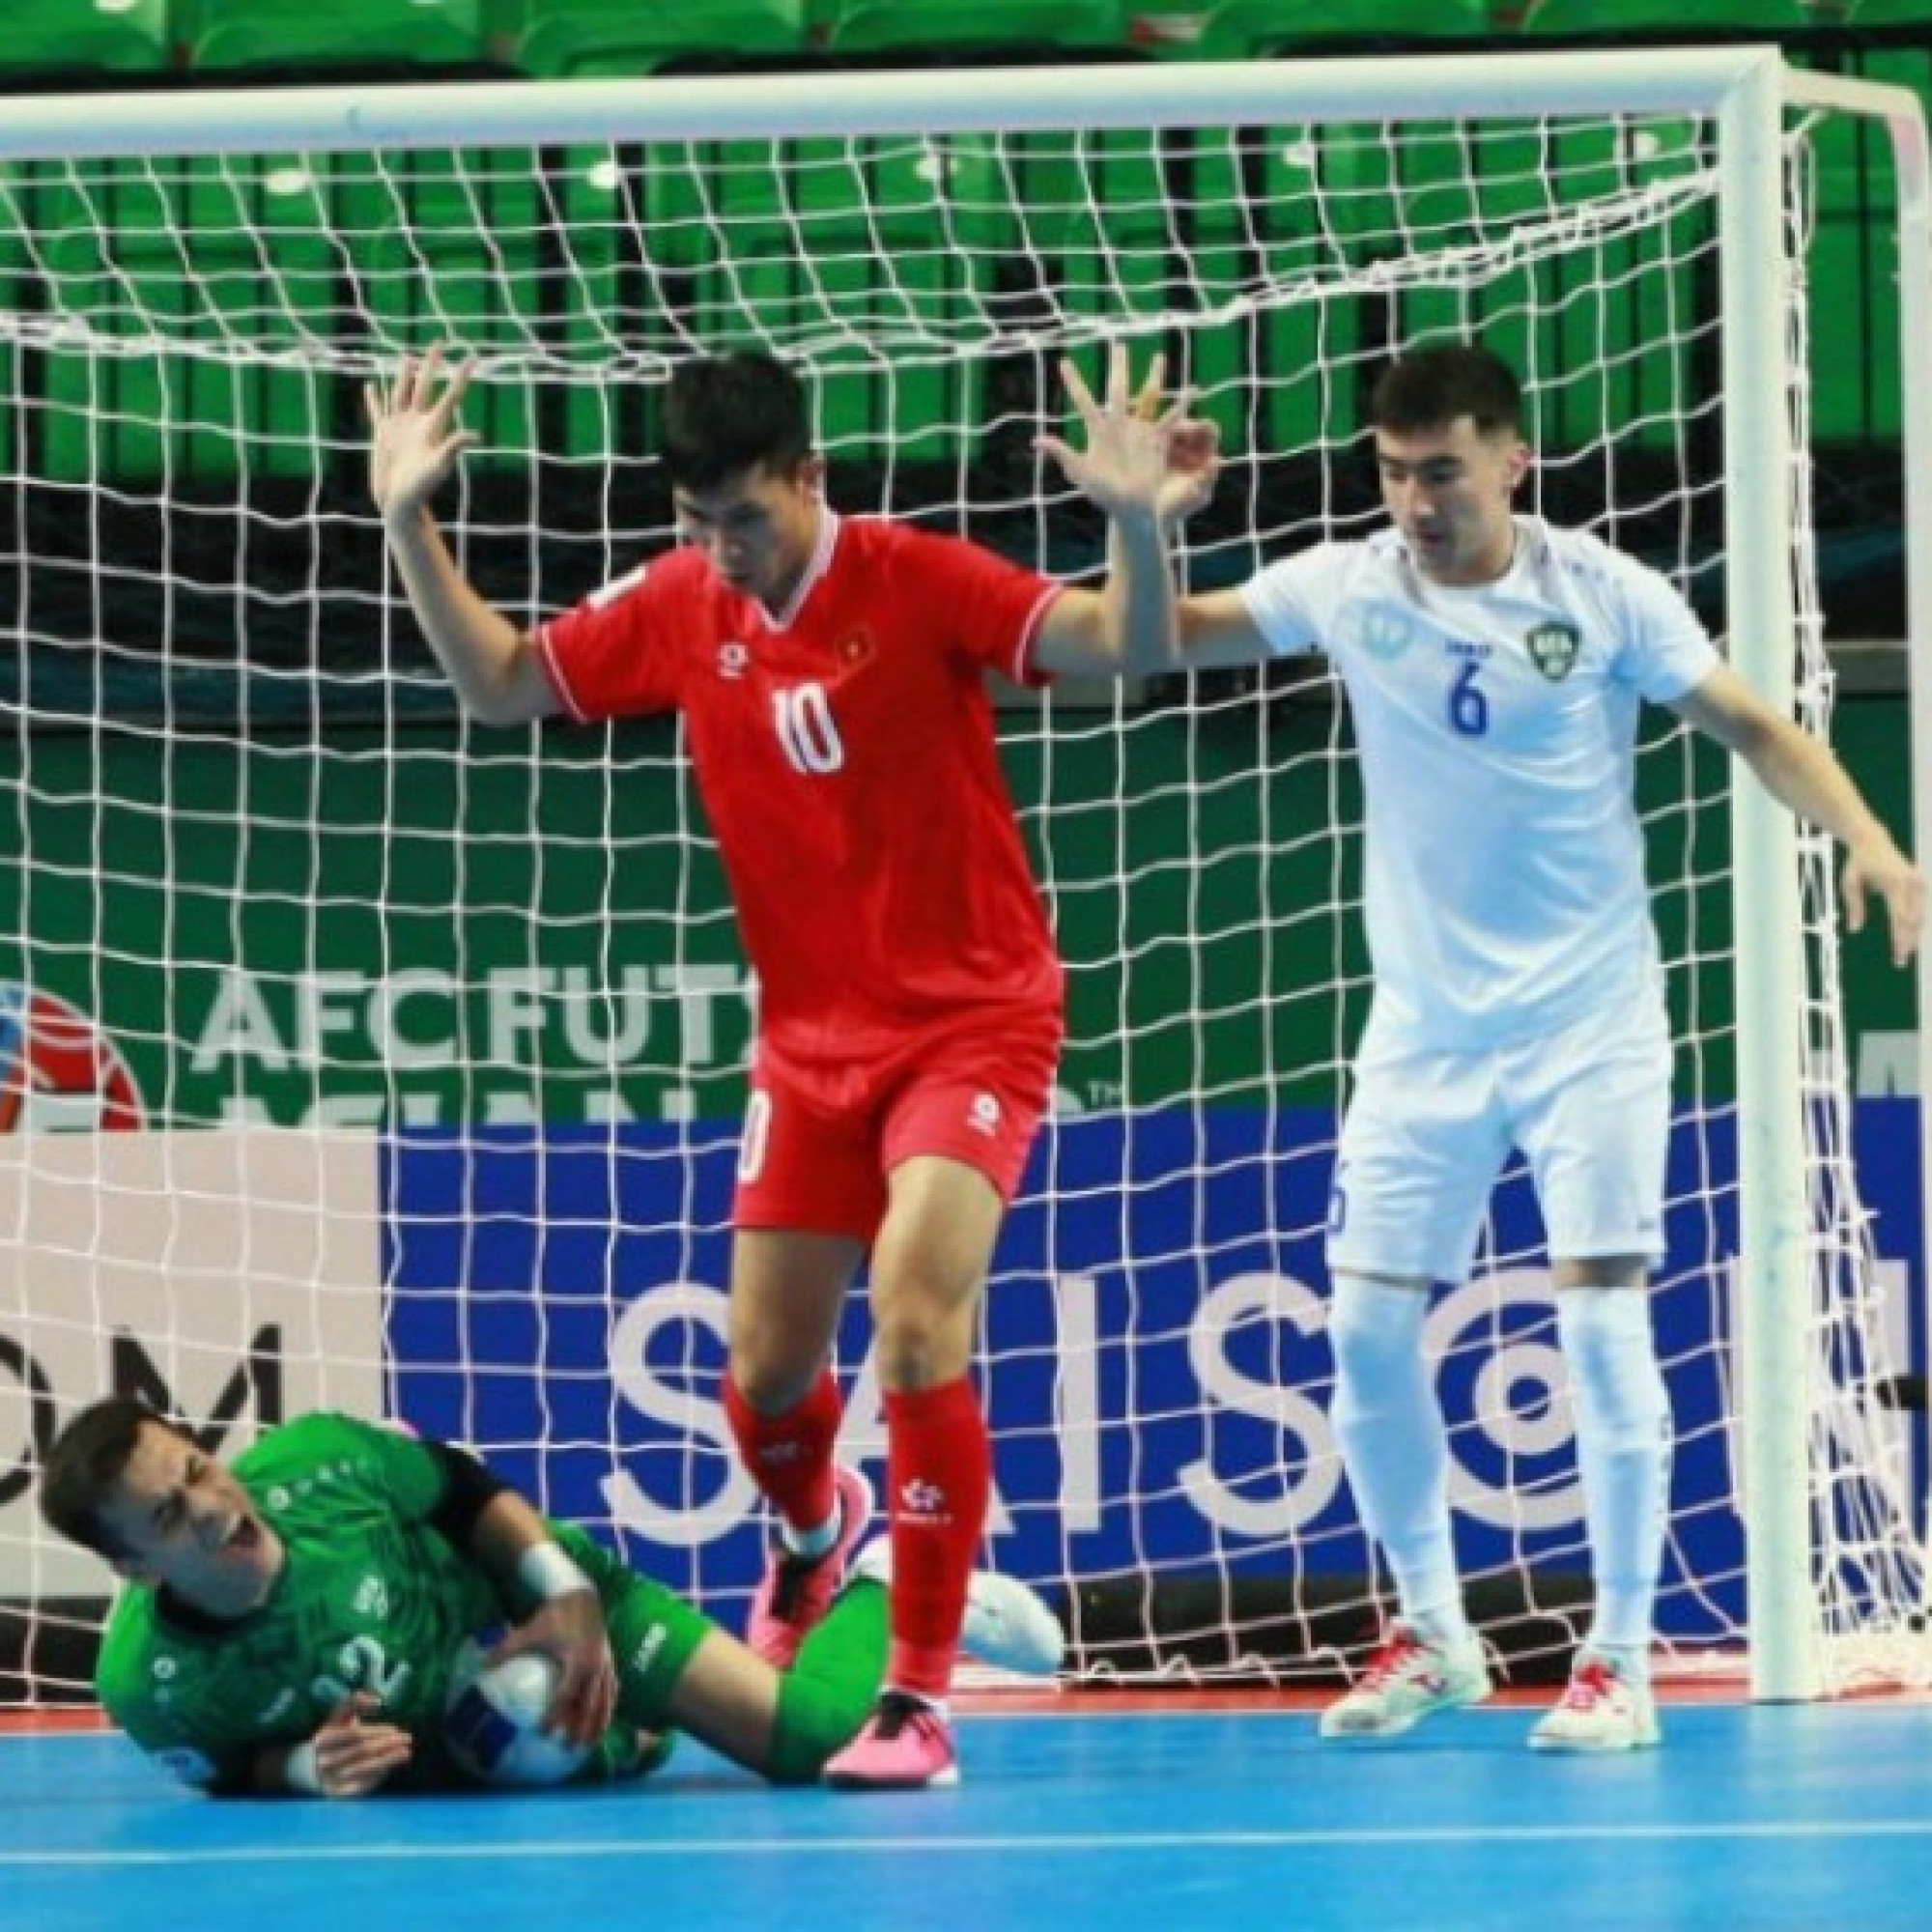  - Trực tiếp bóng đá Việt Nam - Uzbekistan: Juraev ghi bàn ấn định (Futsal châu Á) (Hết giờ)